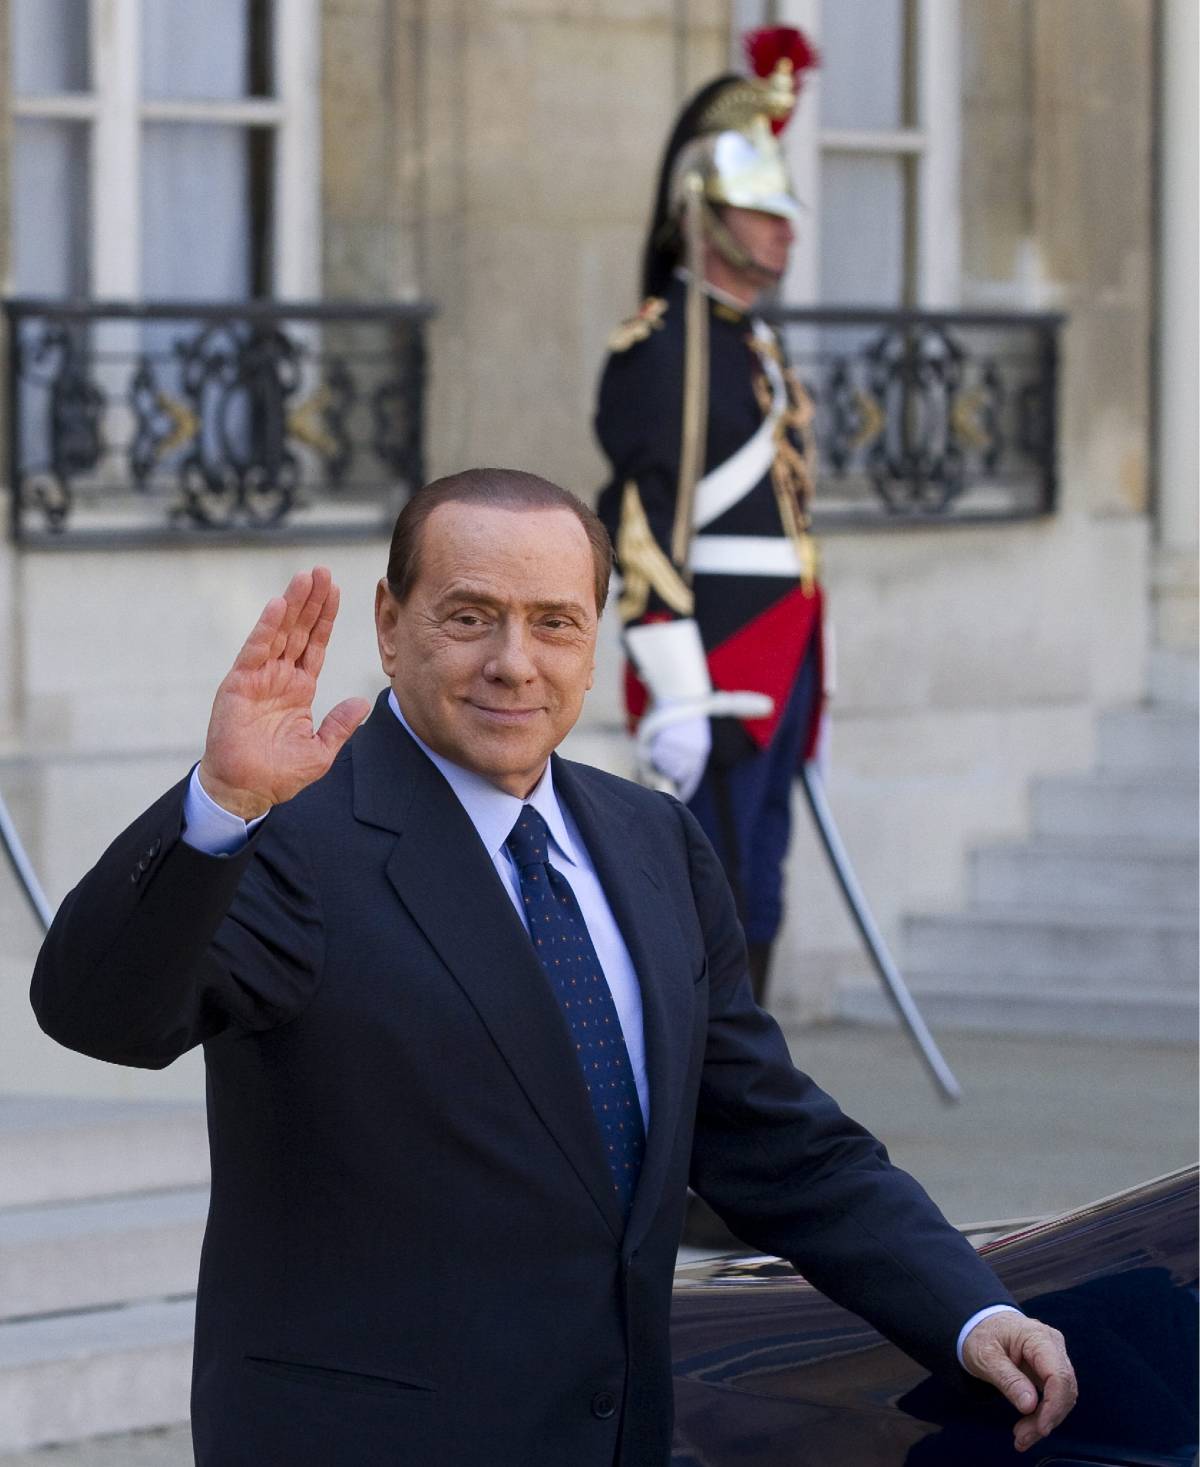 Legittimo impedimento, "Berlusconi impegnato fino a luglio"